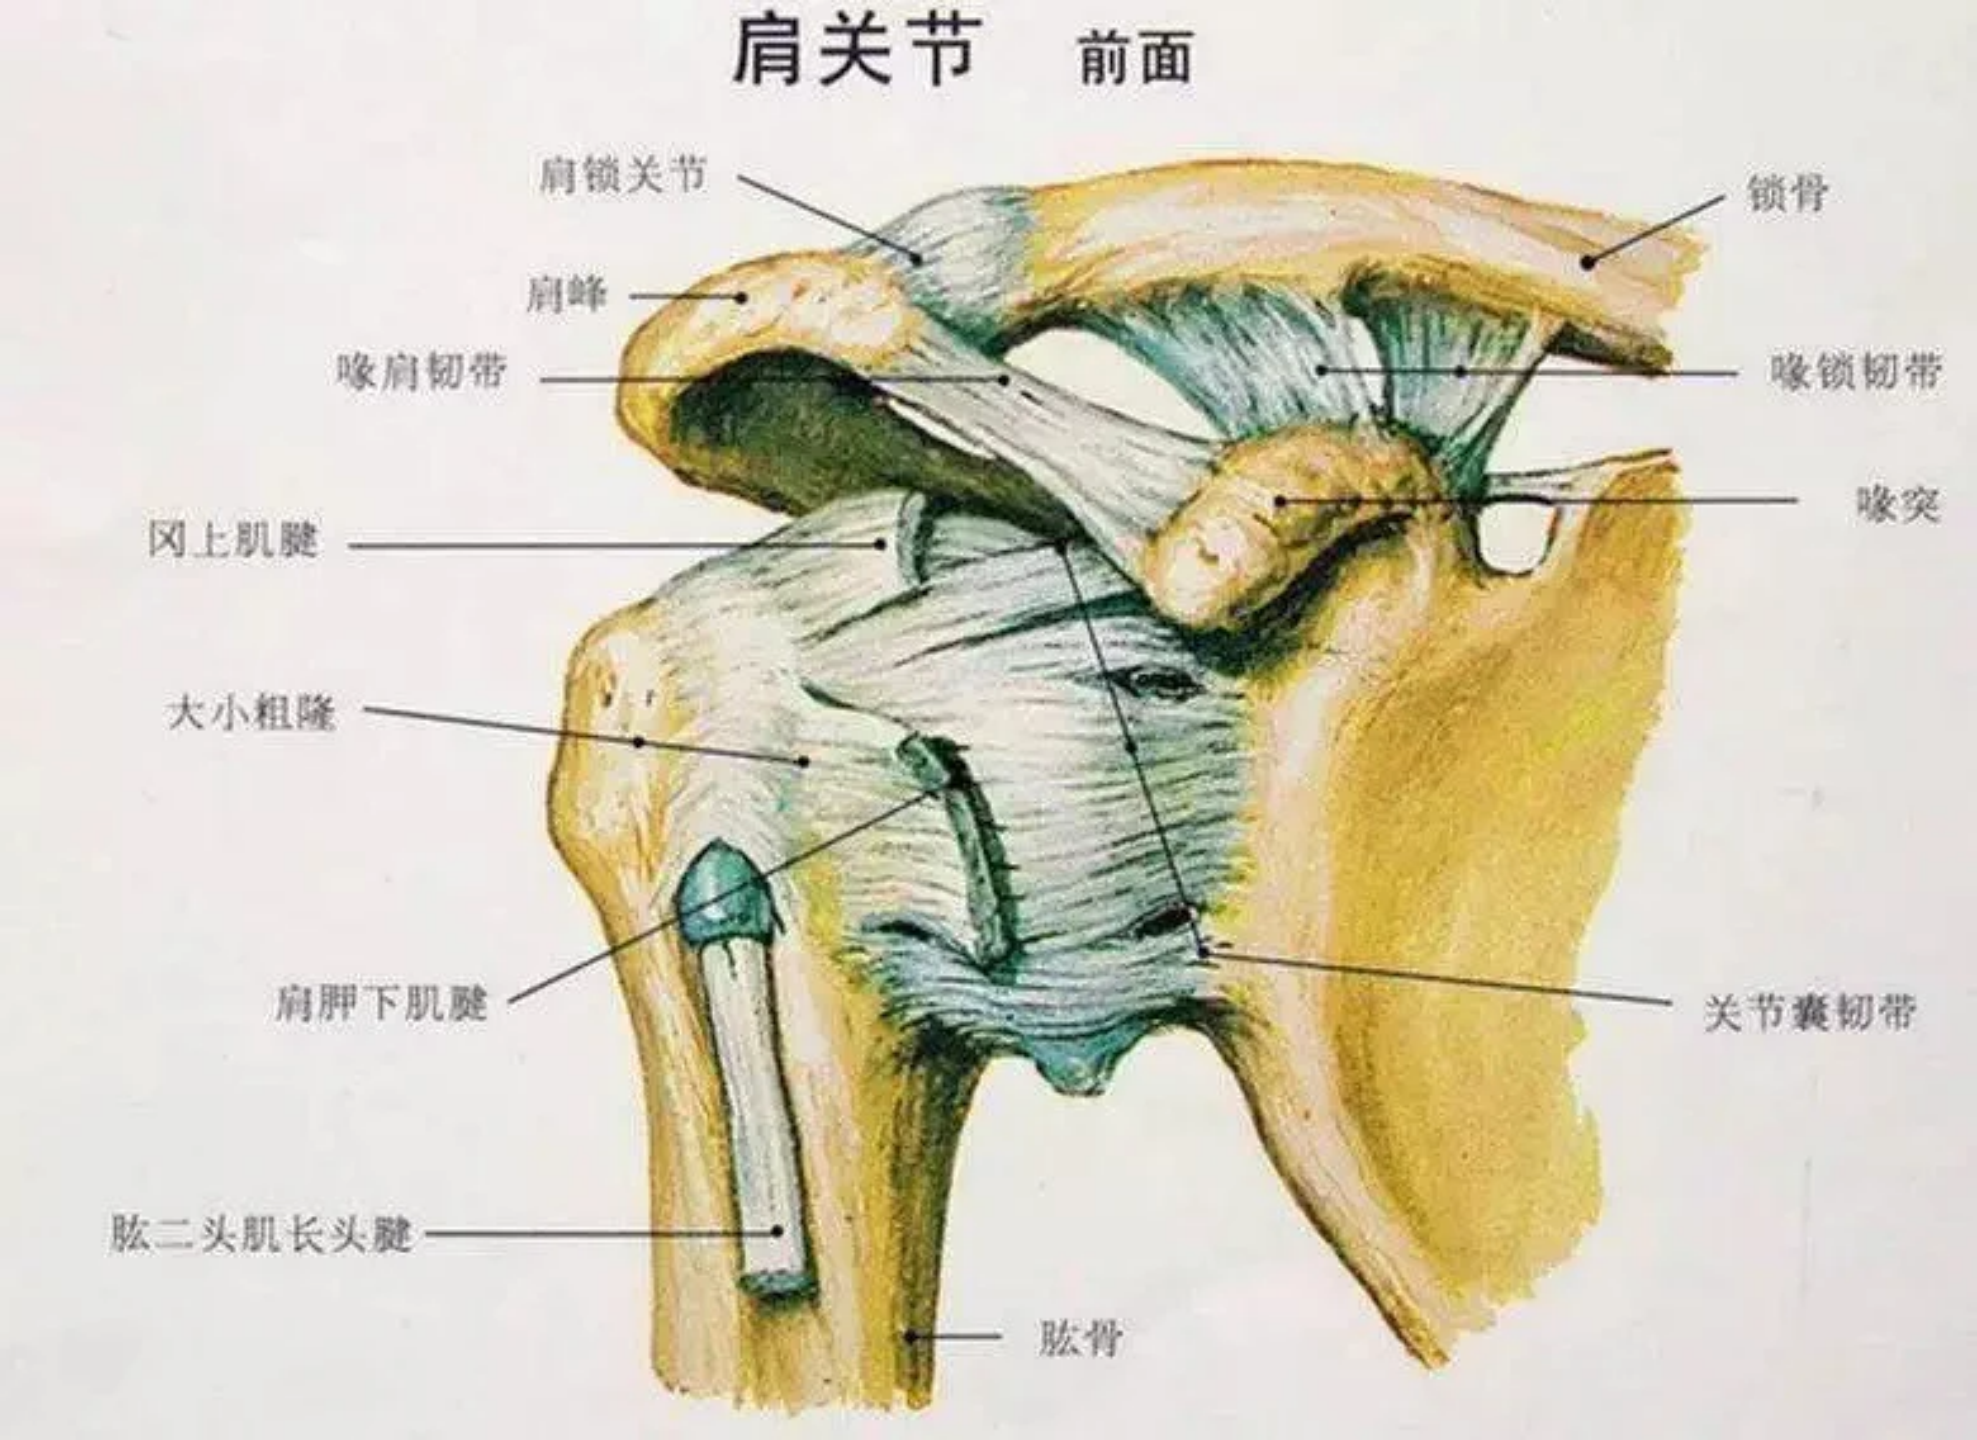 肩周炎位置示意图图片